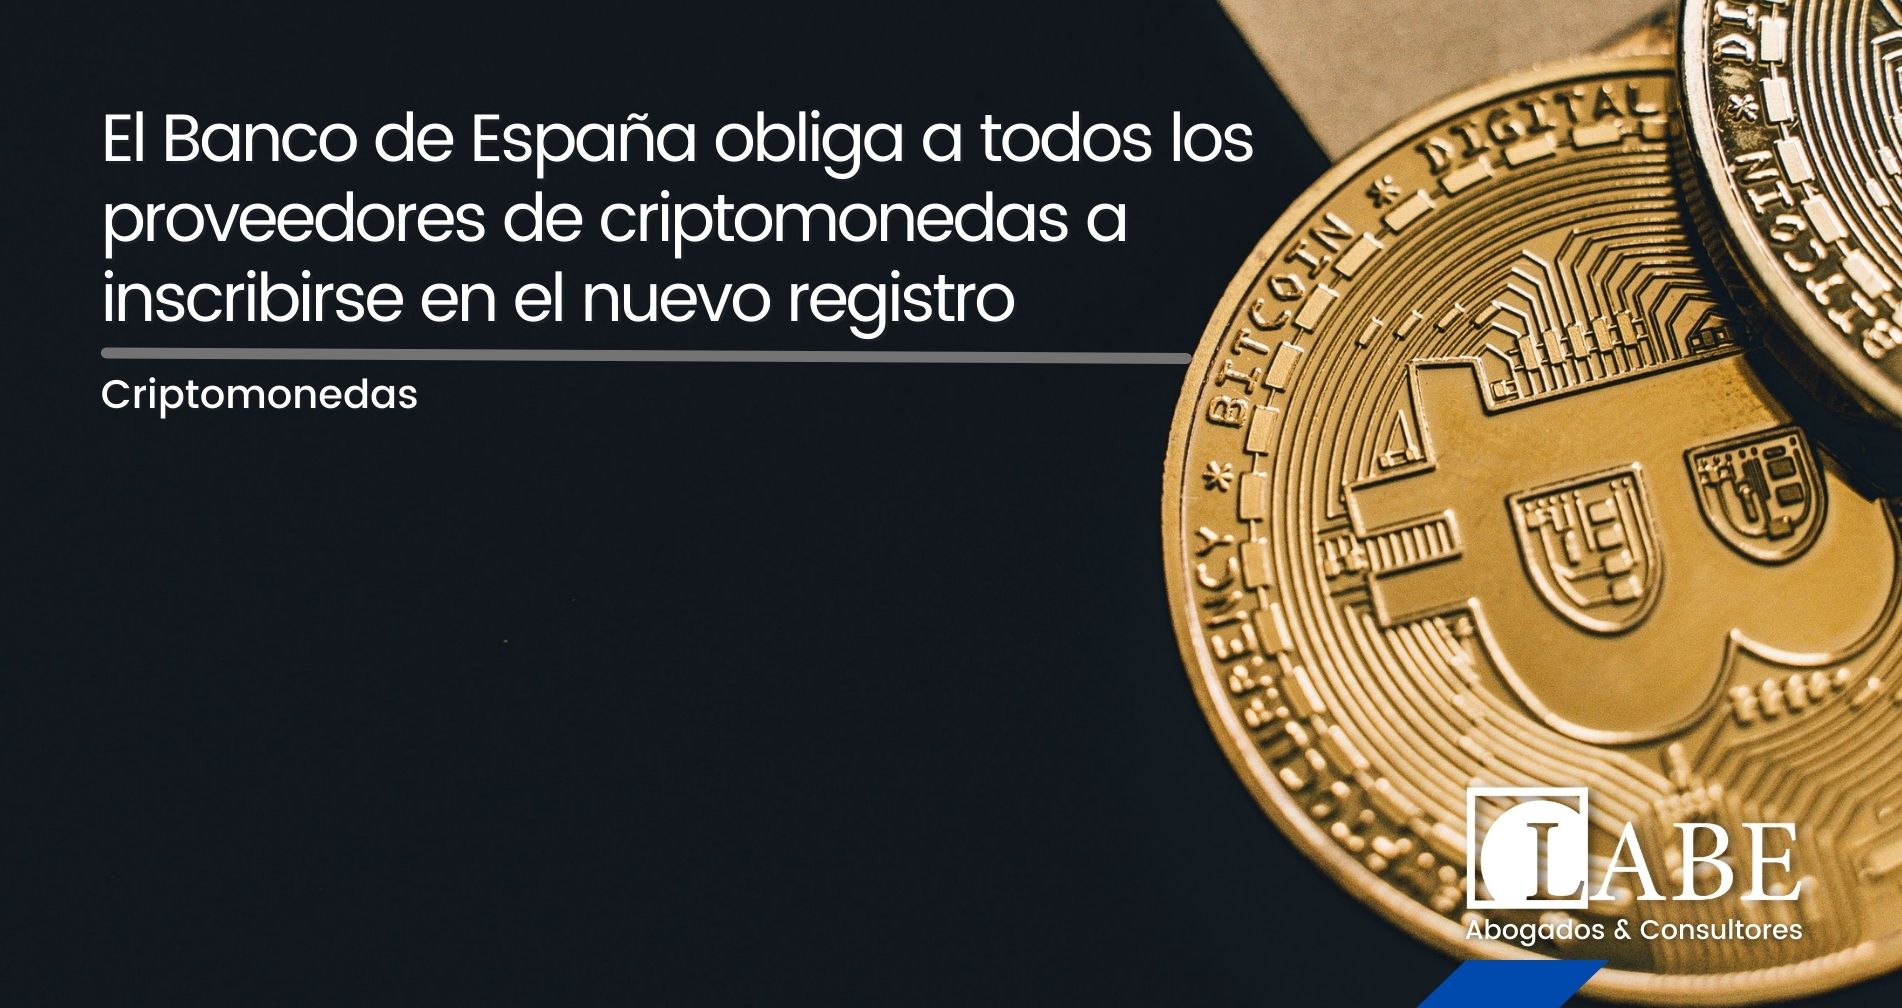 El Banco de España obliga a todos los proveedores de criptomonedas a inscribirse en el nuevo registro